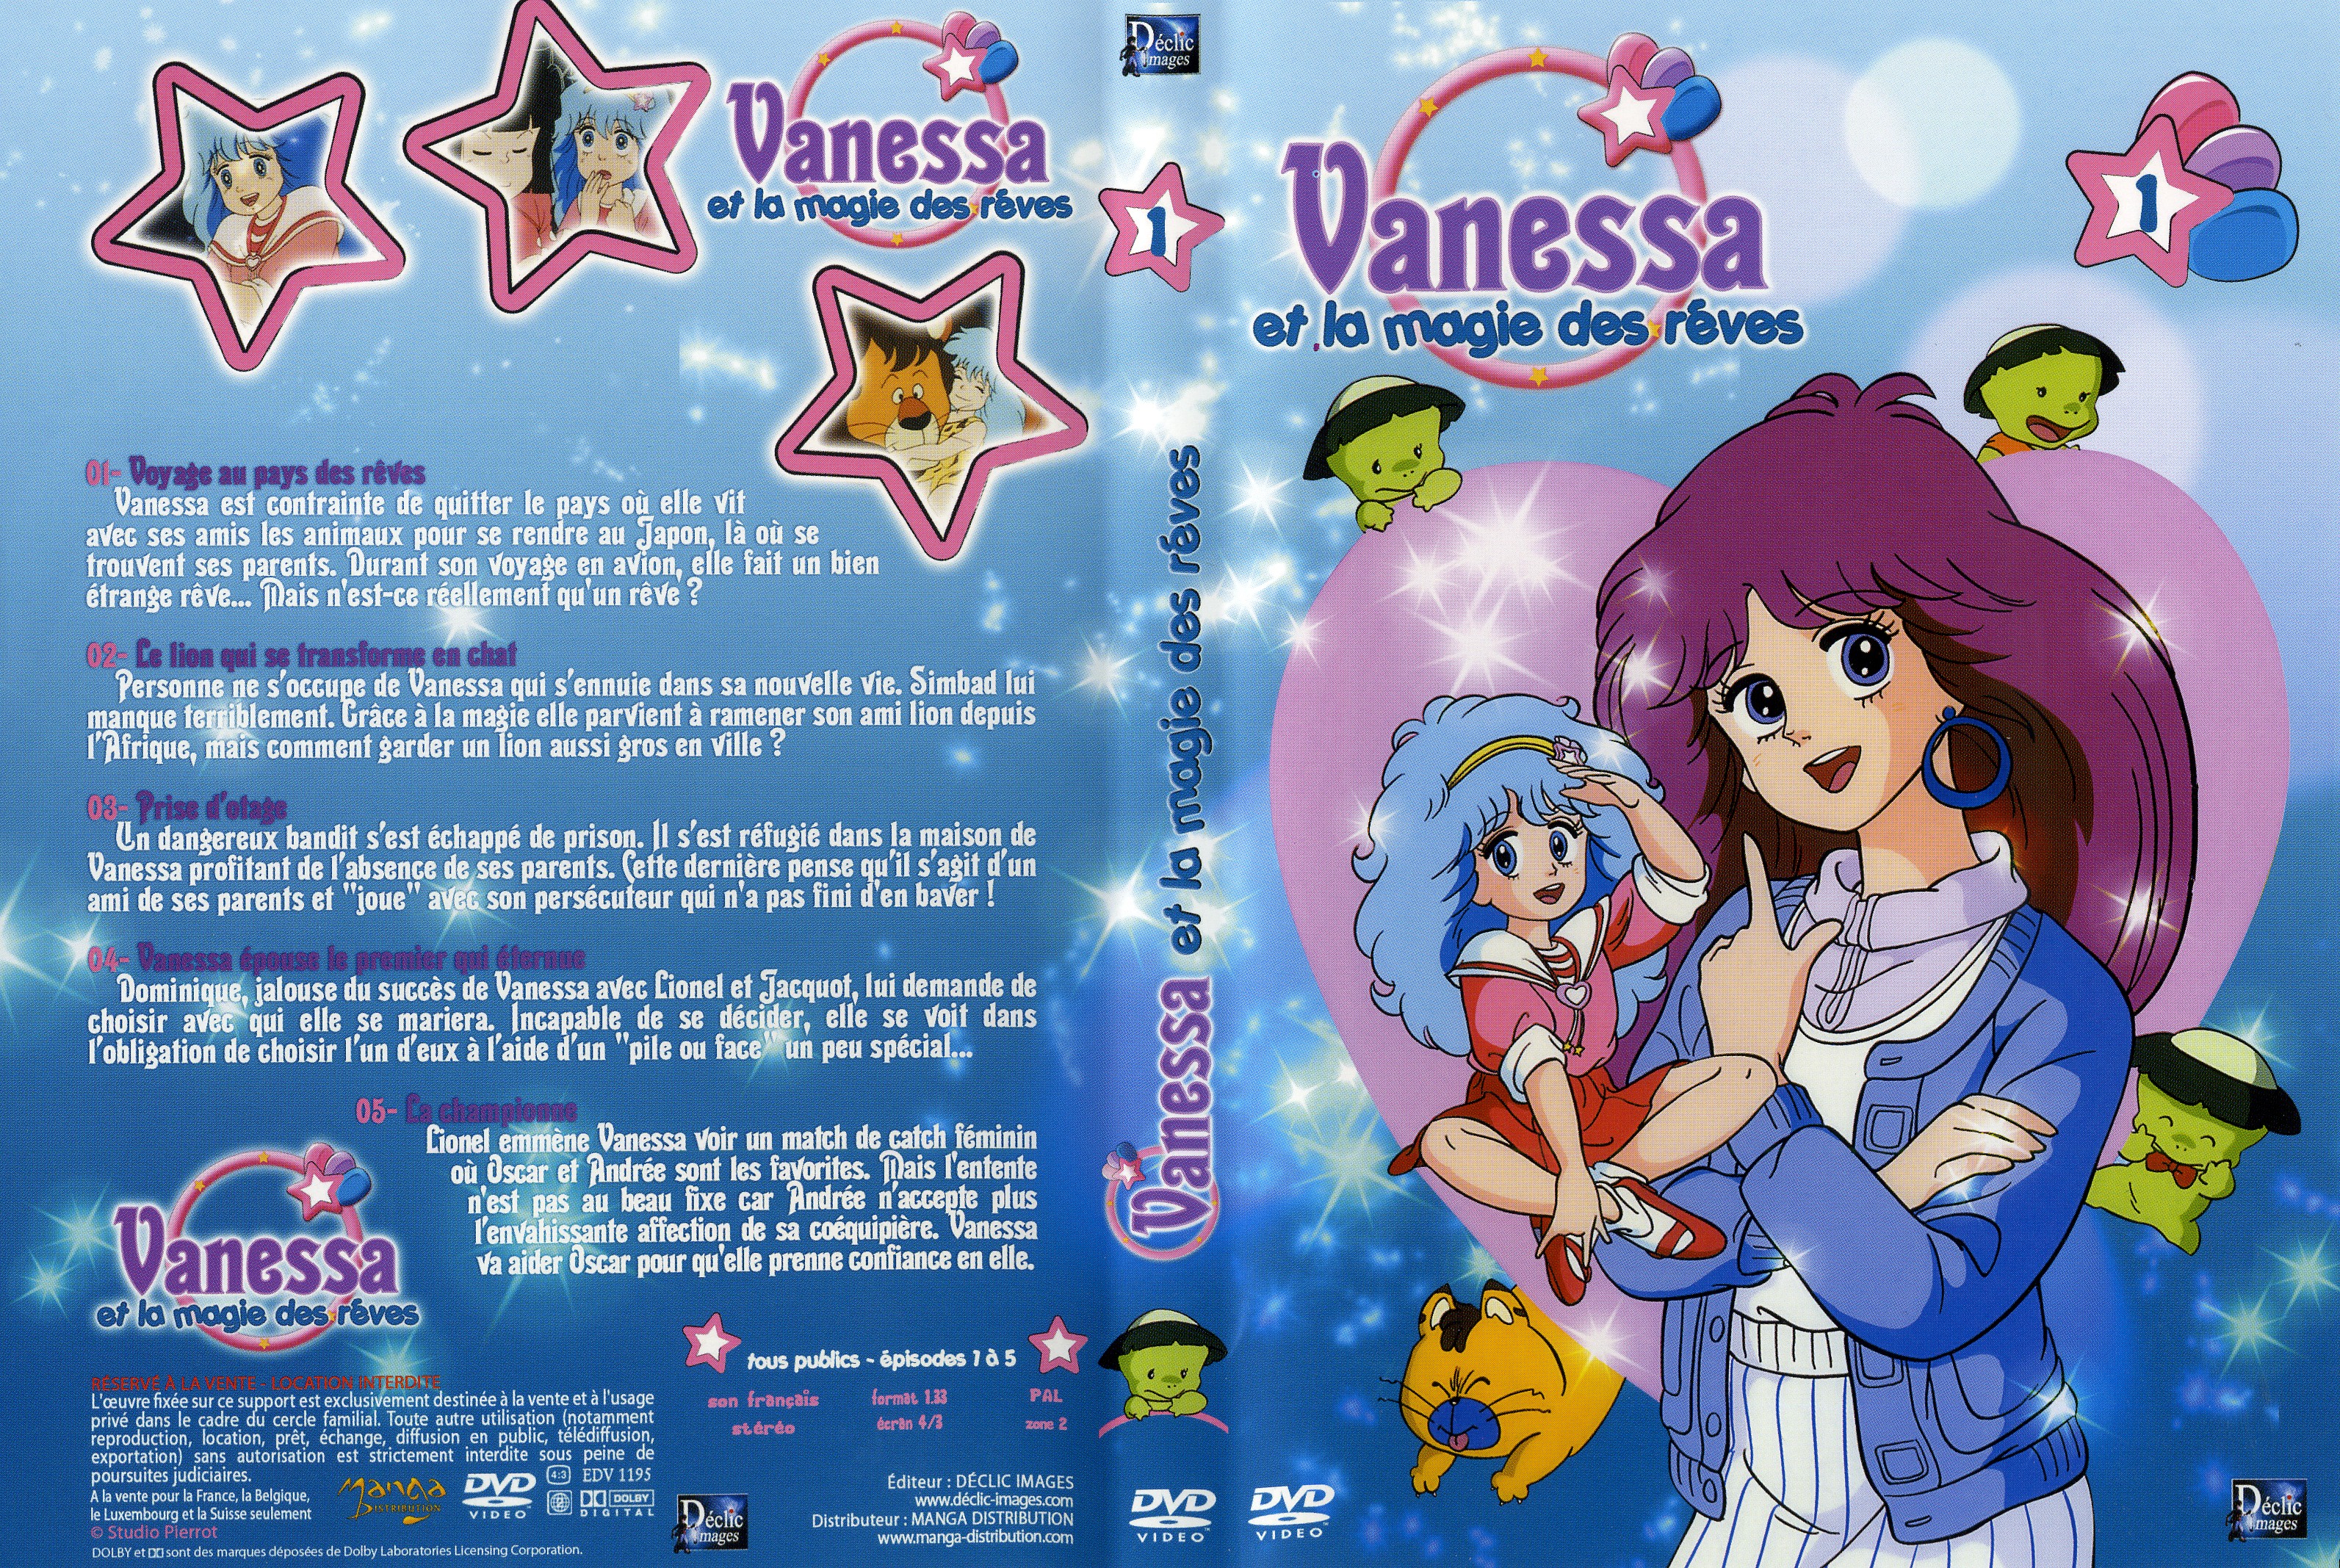 Jaquette DVD Vanessa et la magie des reves vol 1